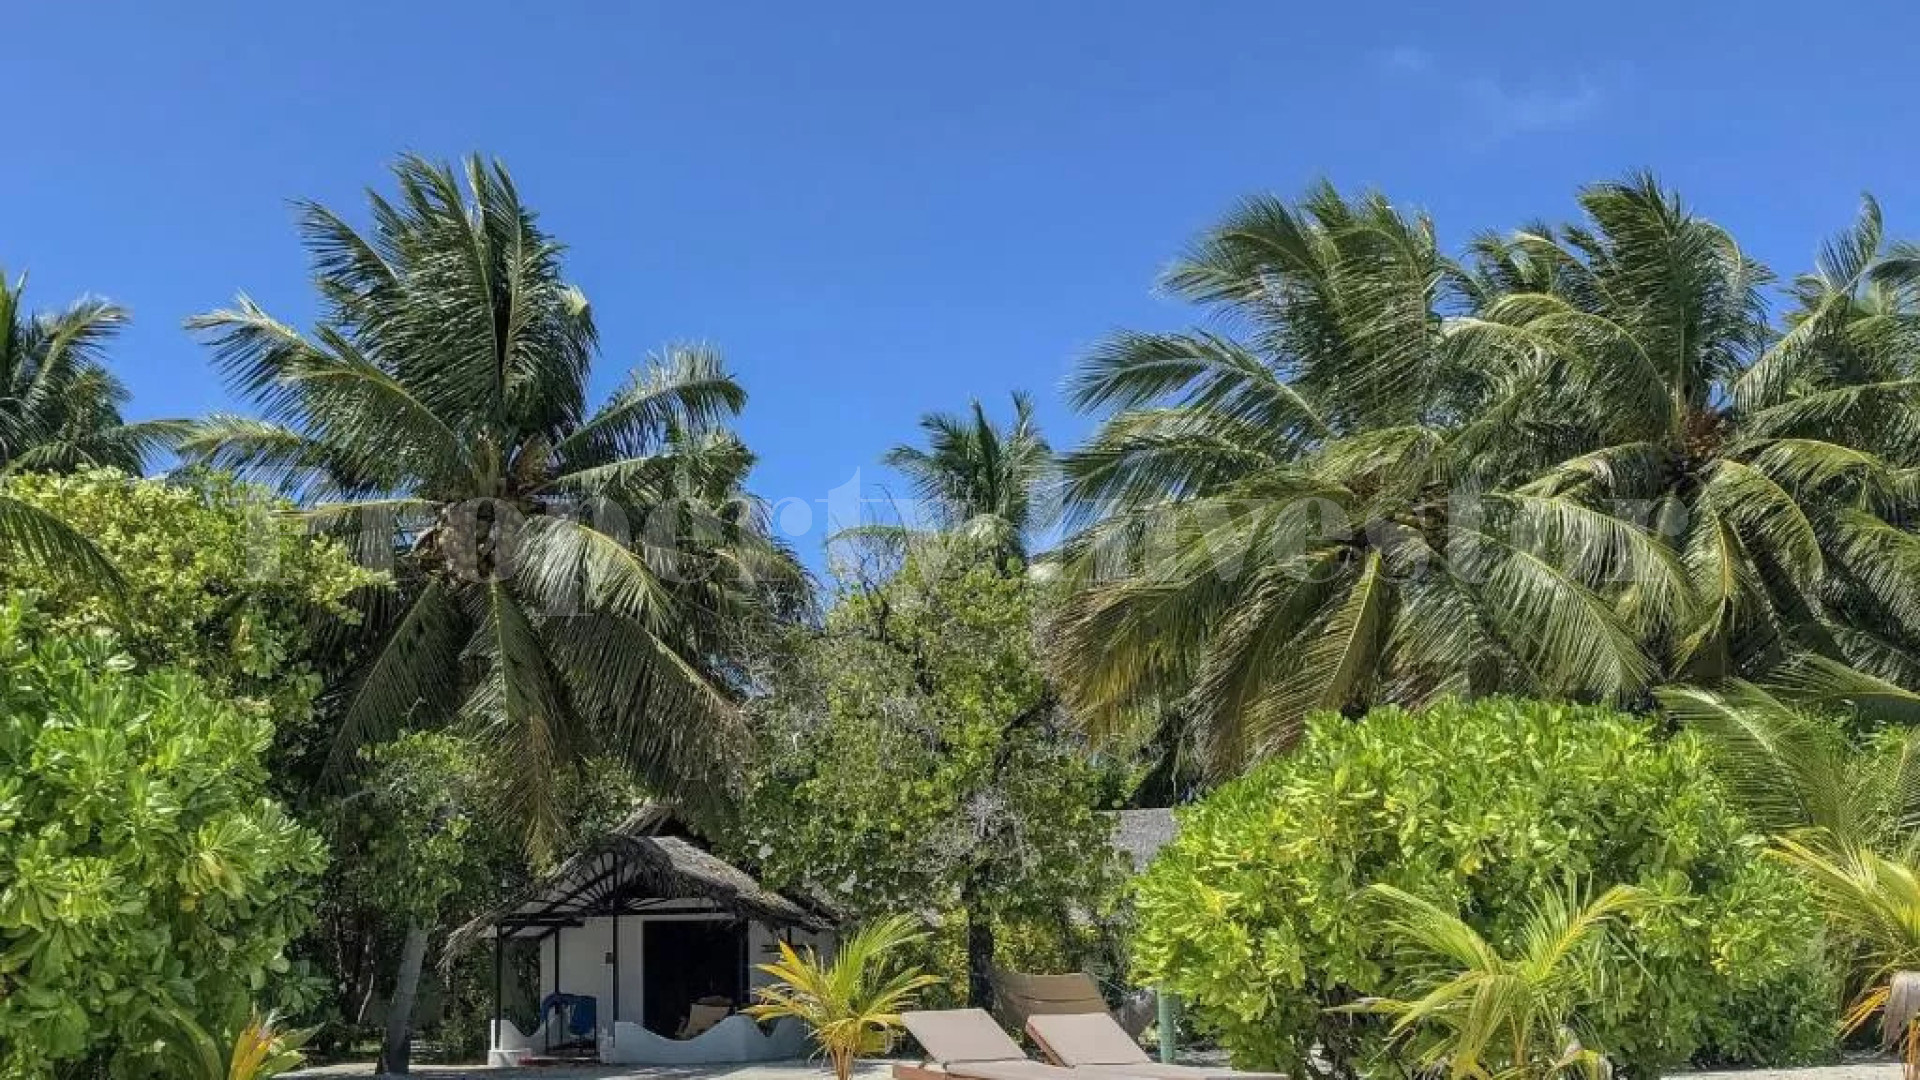 Функционирующий 4* звёздочный эко отель на острове с готовым планом расширения ещё на 174 номера на Мальдивах